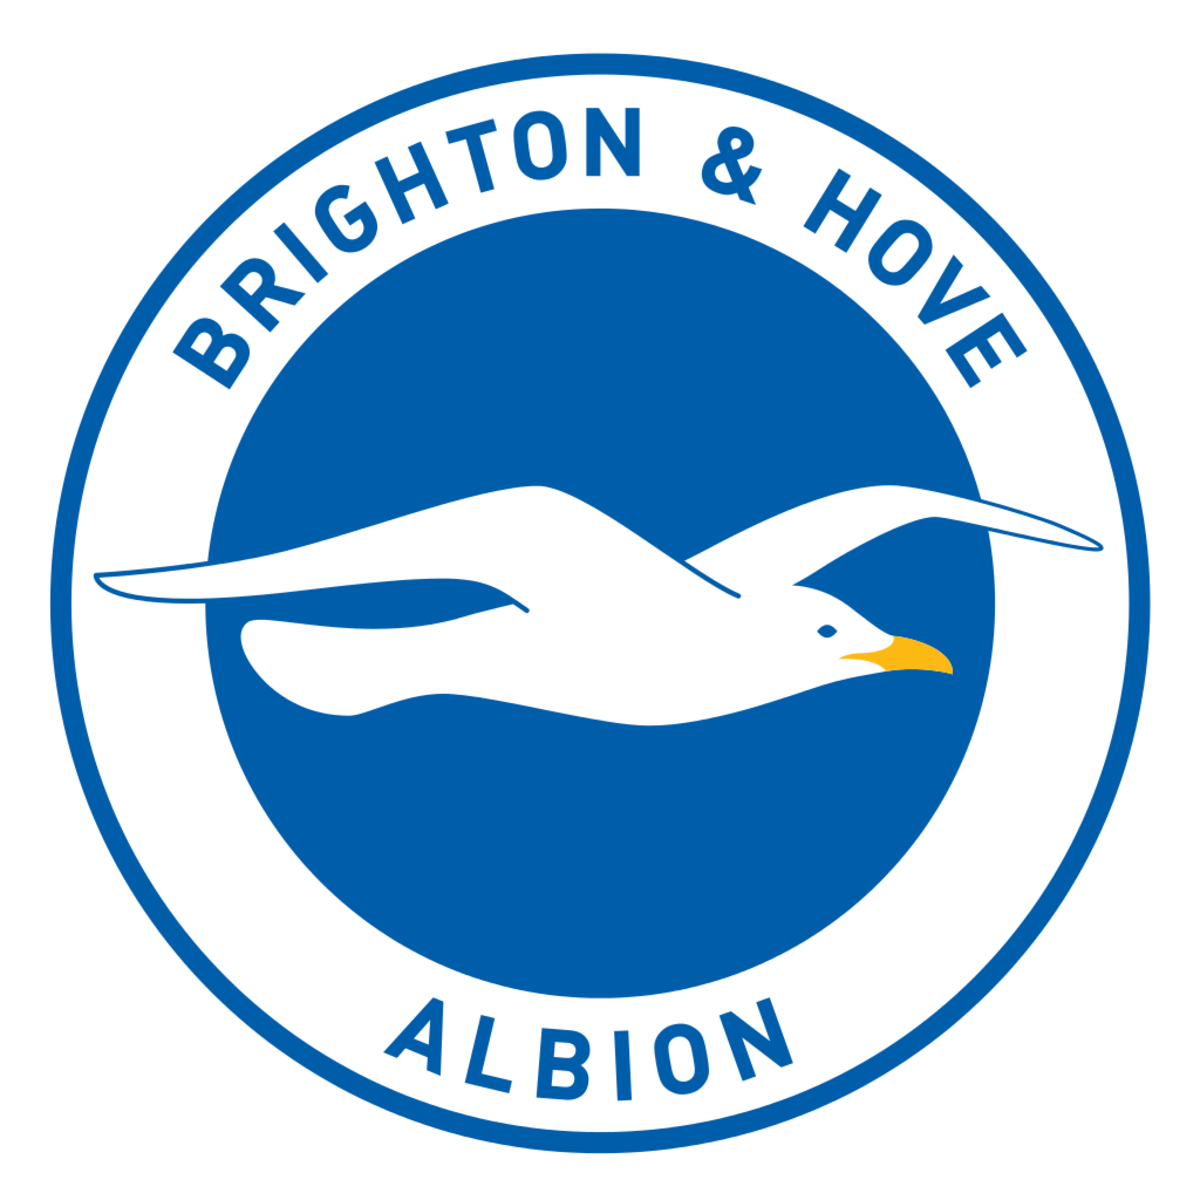 Brighton/Hove Albion